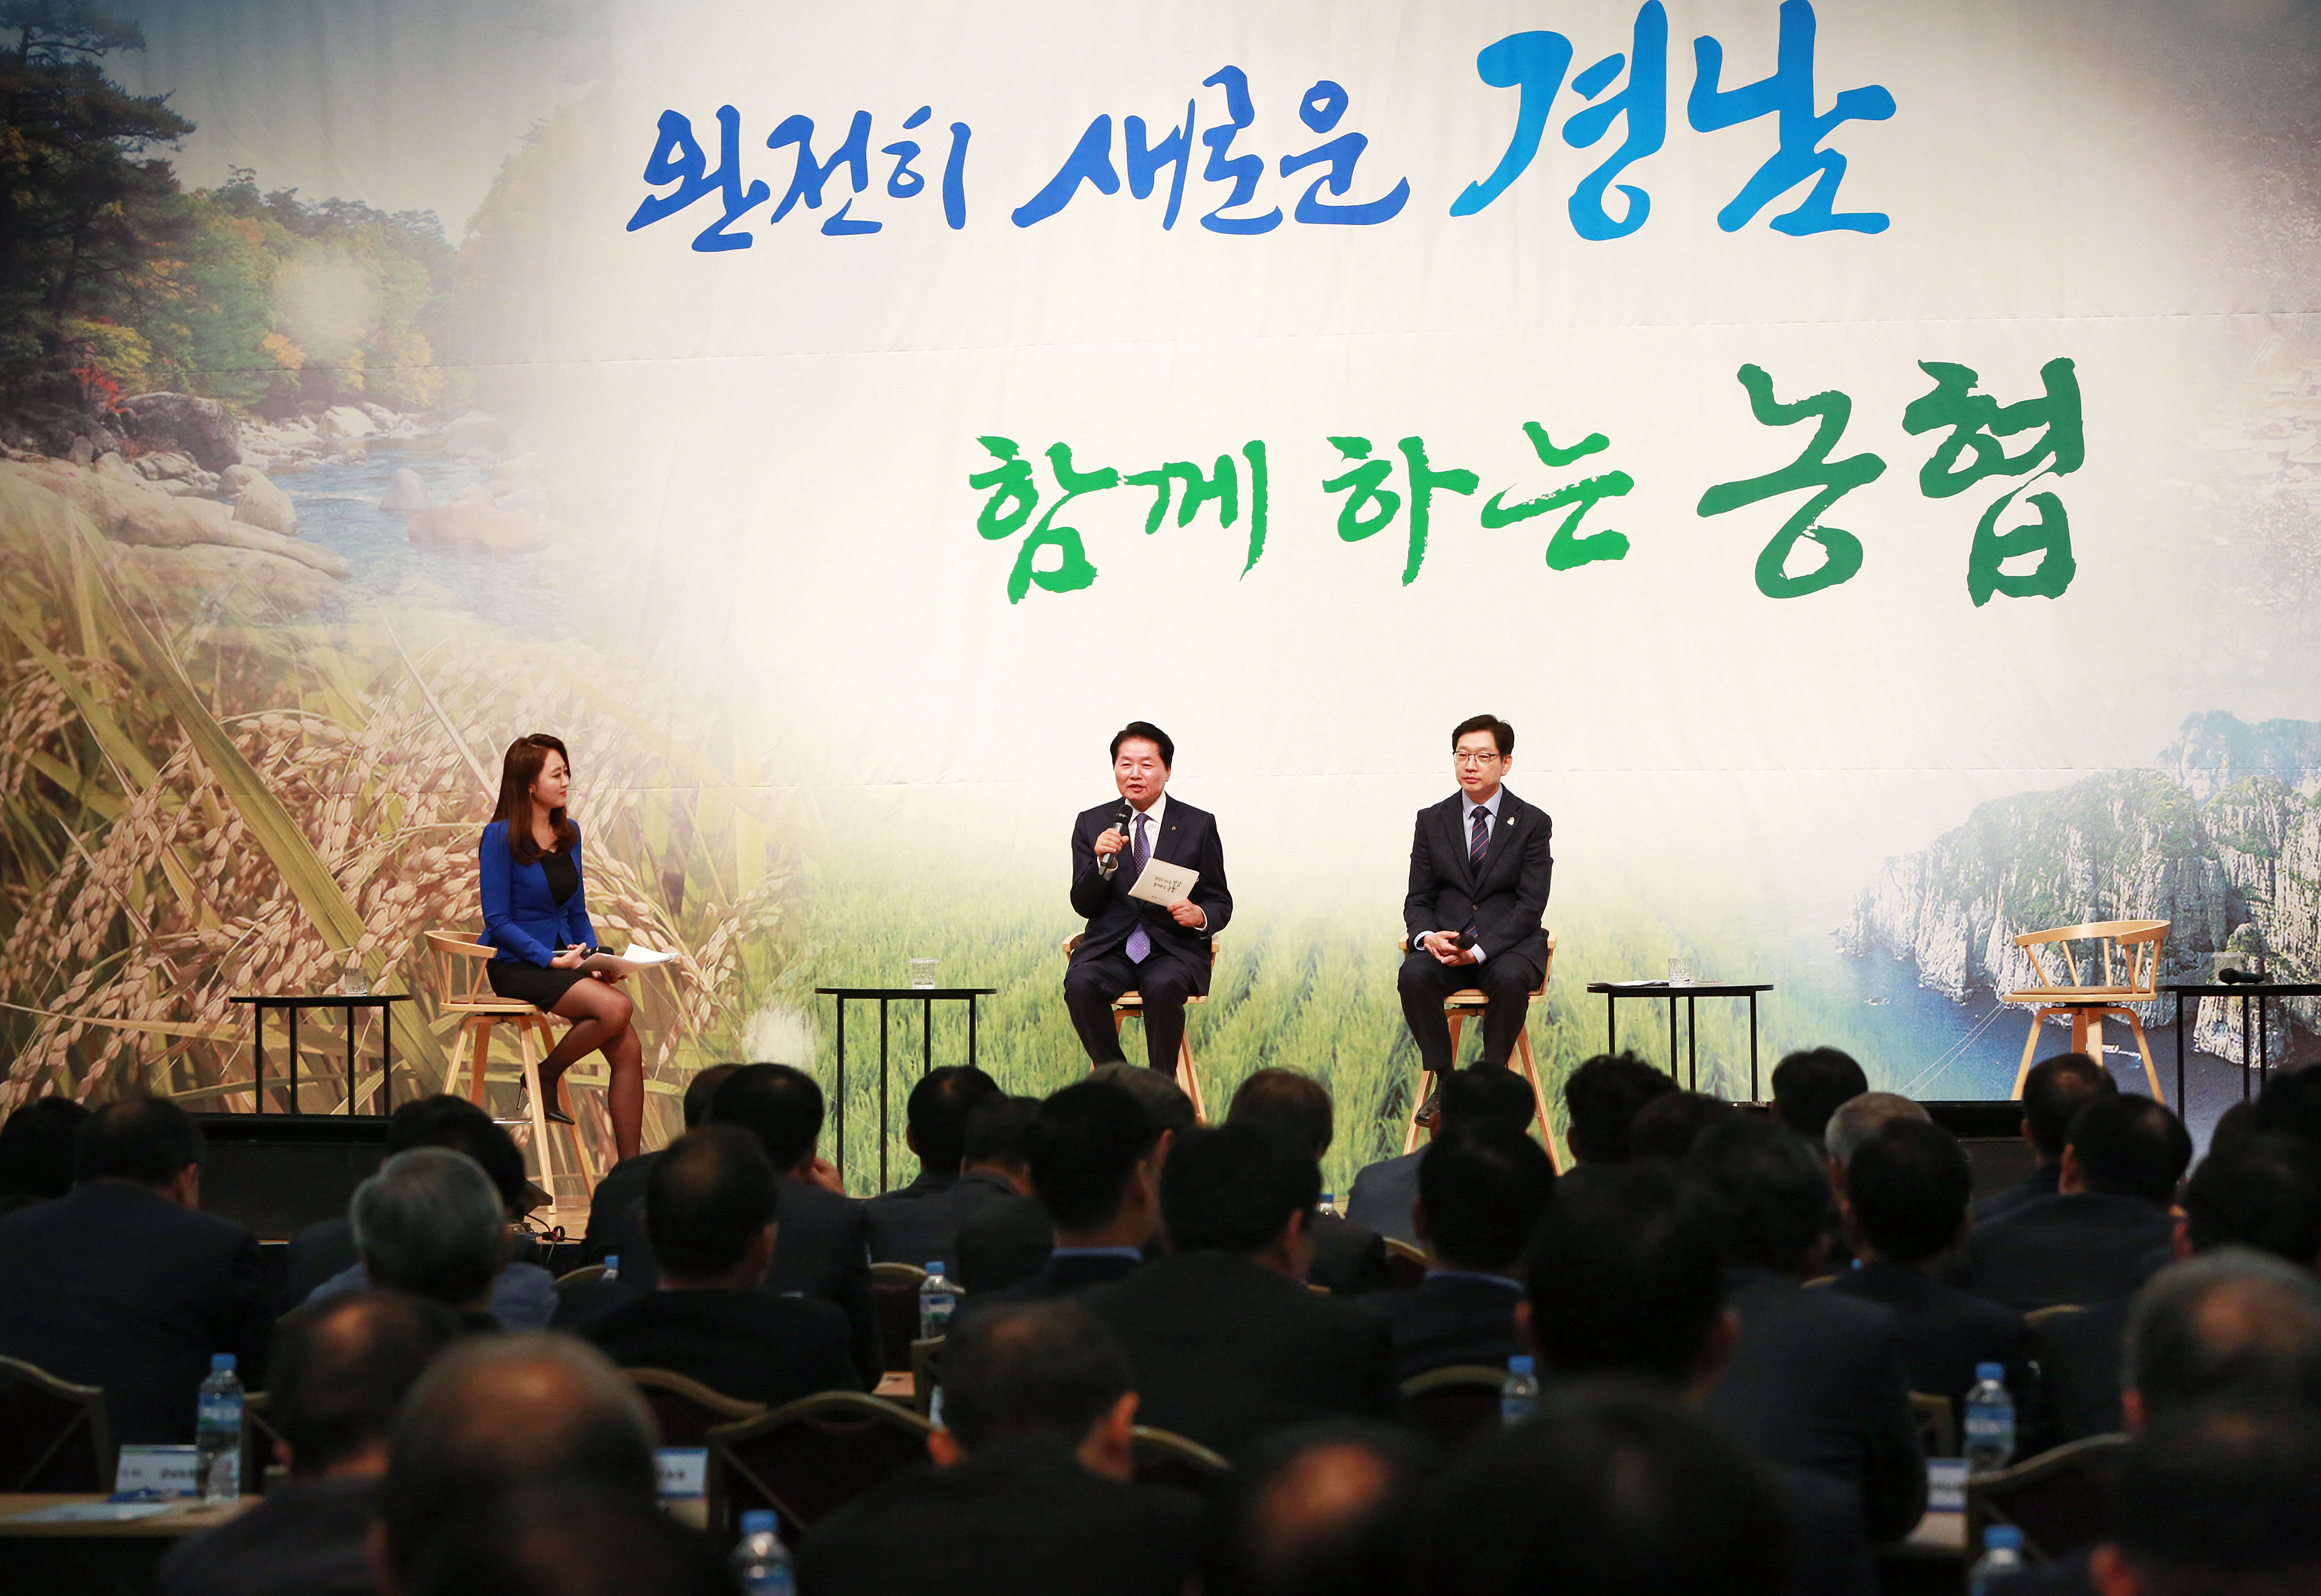 경남농협이 주최한 김경수 도지사와 함께하는 토크콘서트